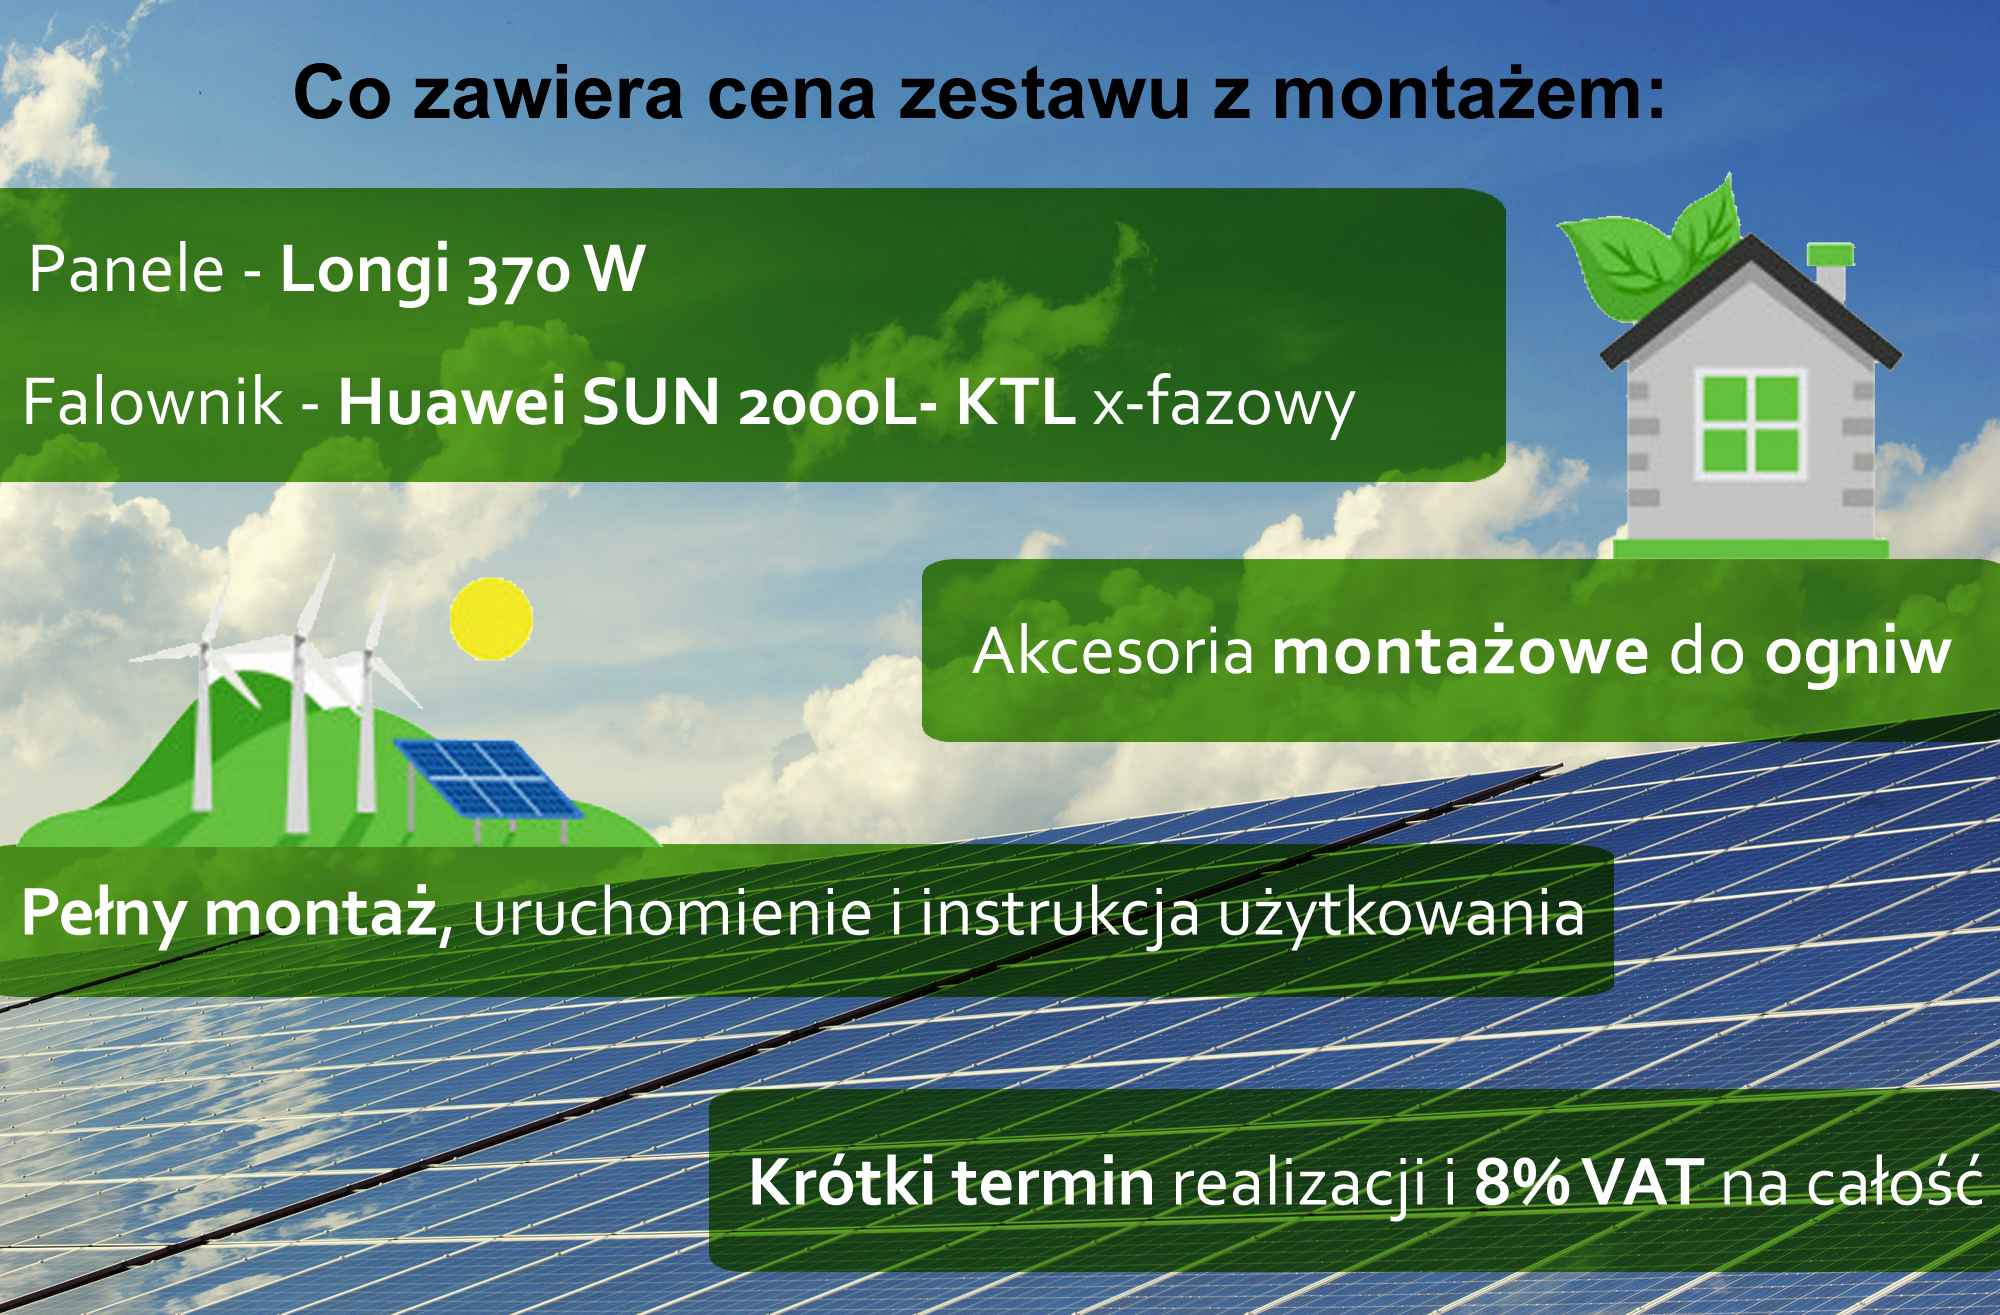 FOTOWOLTAIKA 4 kW 11 PANELI ZESTAW SOLARNY MONTAŻ INSTALACJA OGNIW Fabryczna - zdjęcie 2